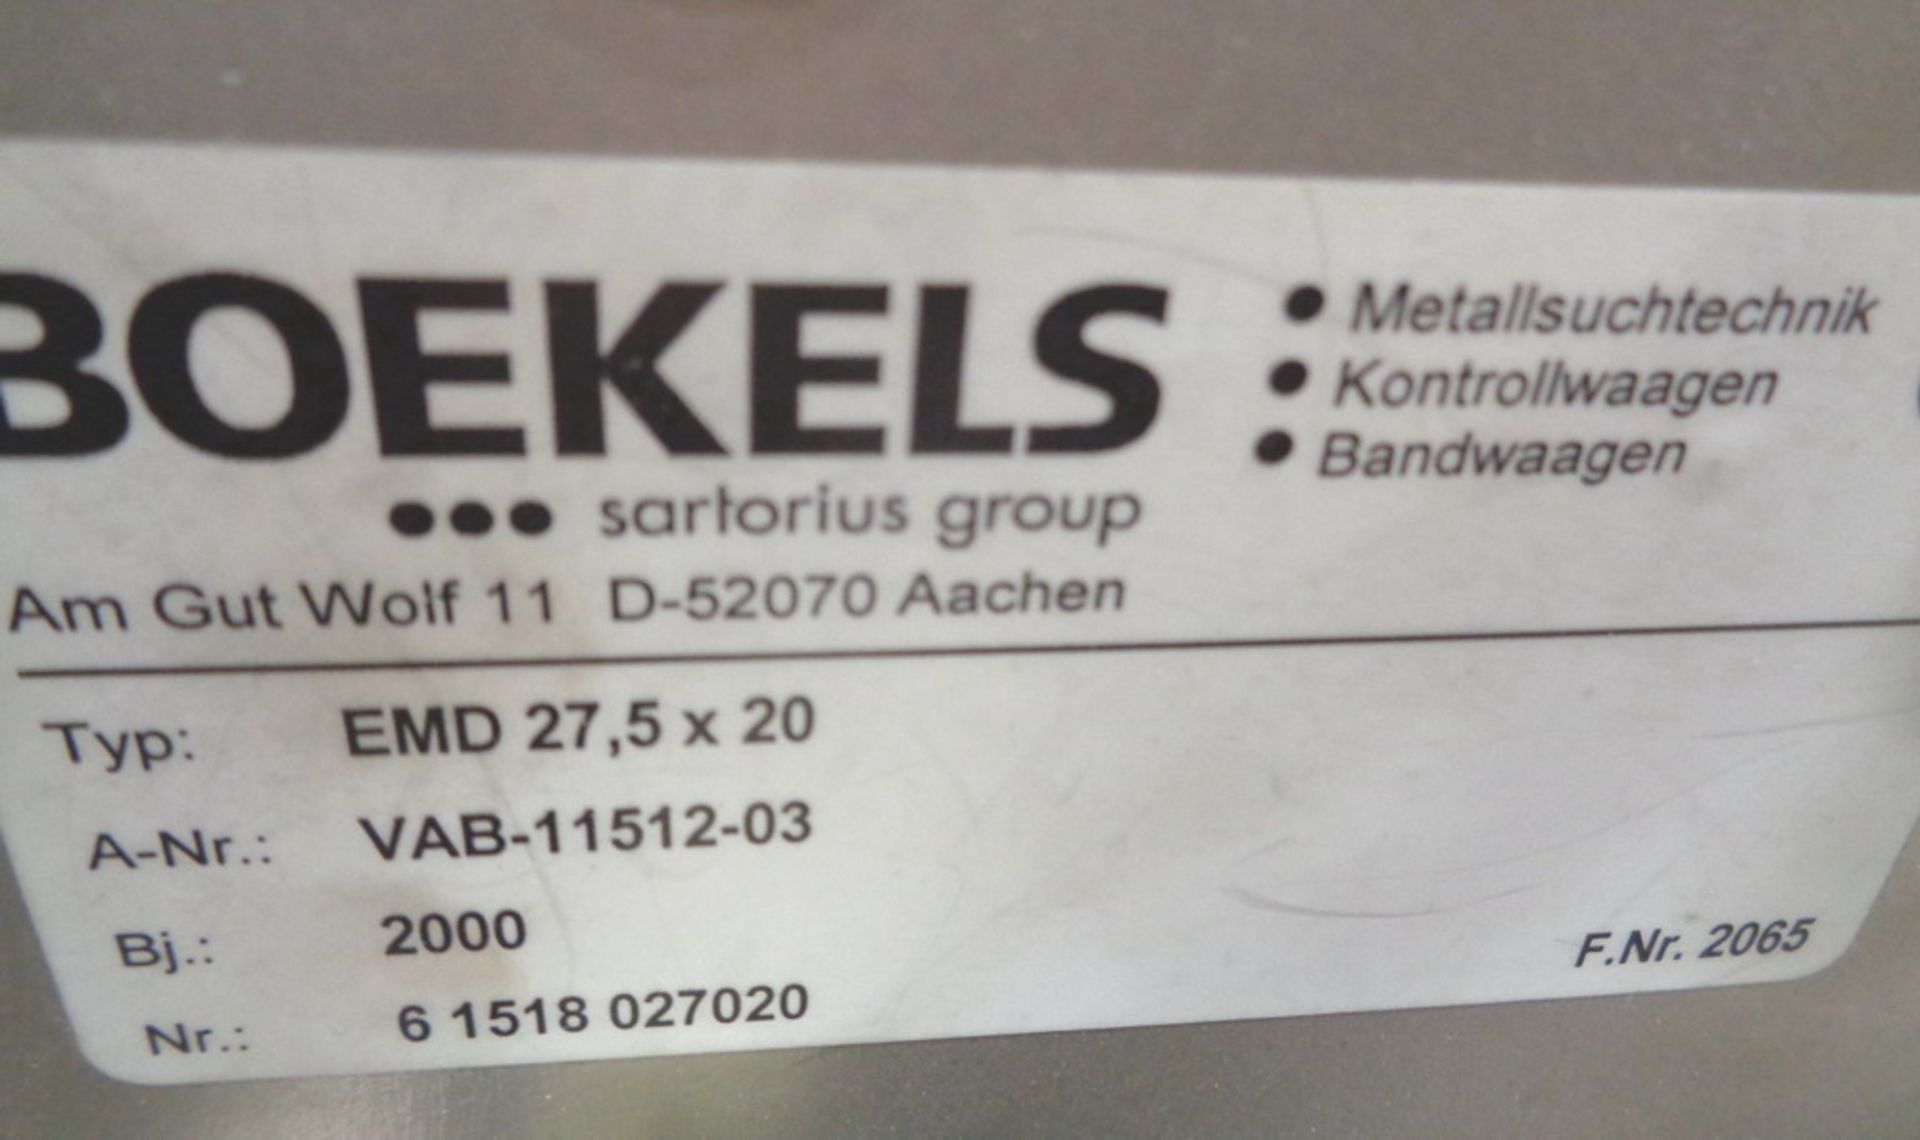 Boekels Packaging Line Bottle Metal Detector, type EMD 275 x 20, A-NRVAB11512-03 - Image 3 of 10